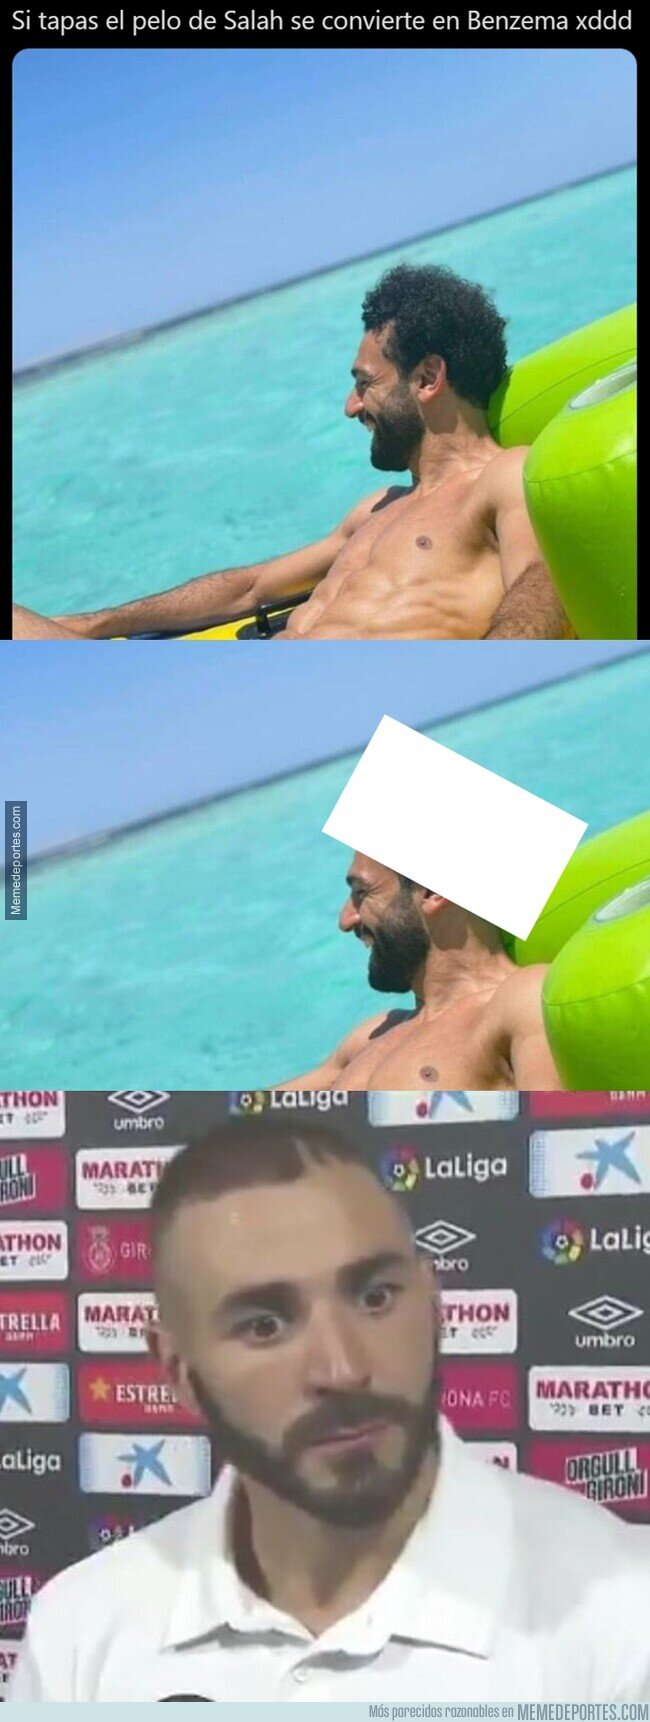 1138439 - Todo el mundo se está riendo con este detalle de la foto de Salah en vacaciones que está haciendo explotar cabezas